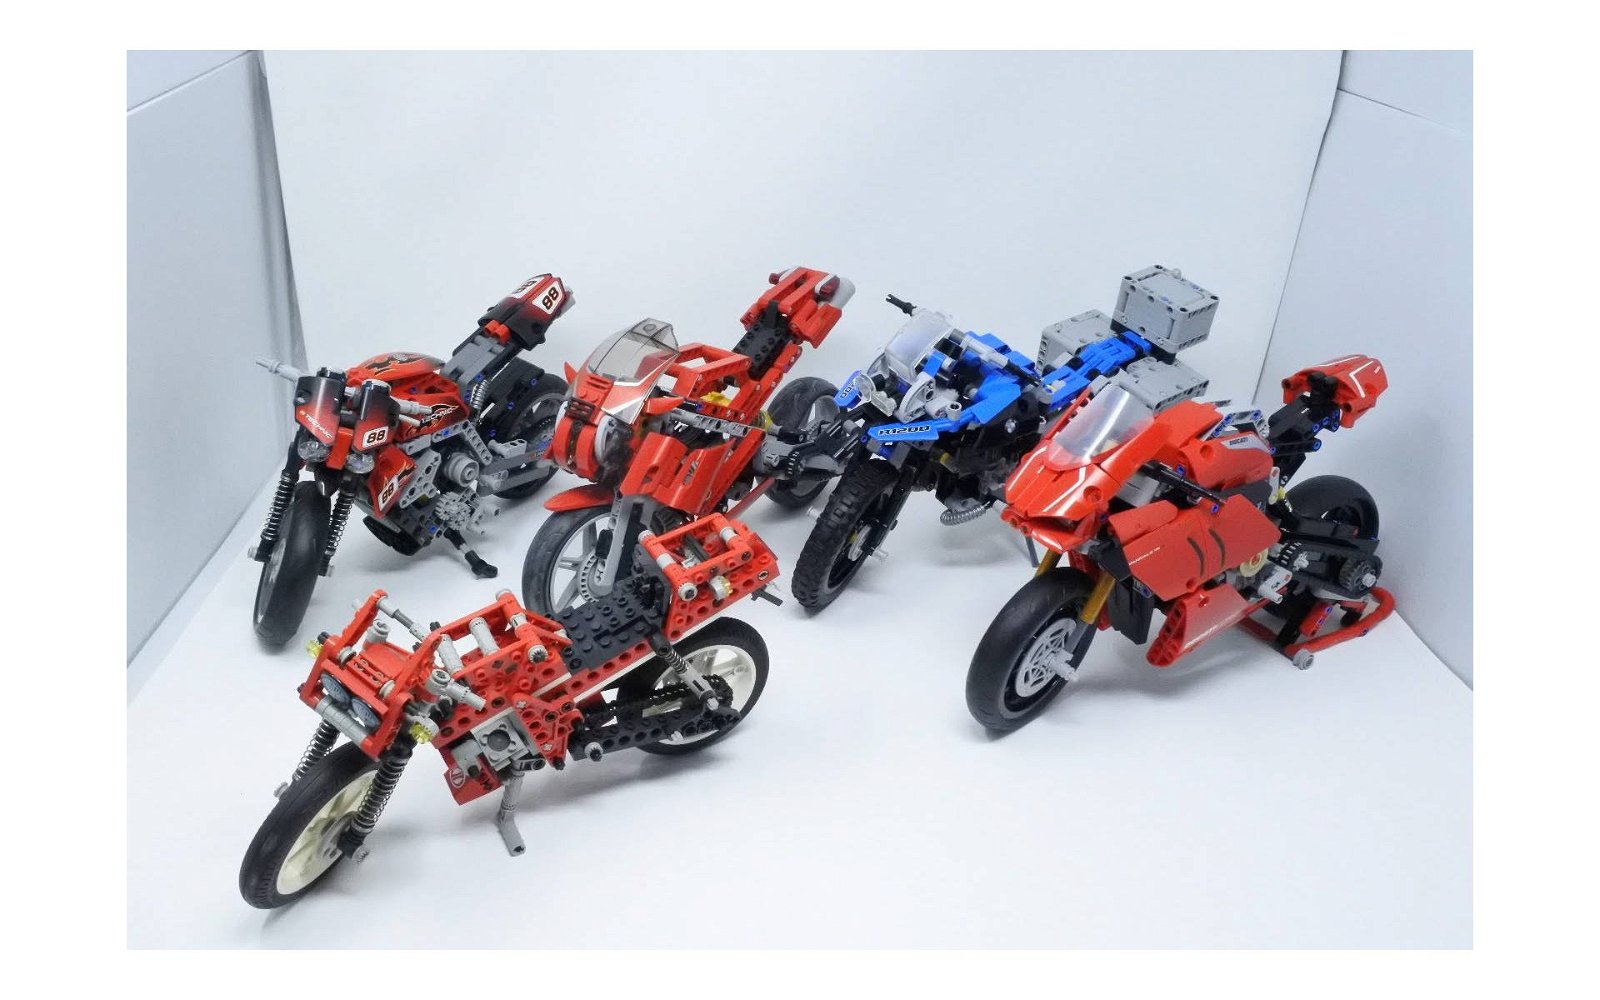 Immagine di LEGO Technic: le 10 sorelle a due ruote della Ducati Panigale V4 R